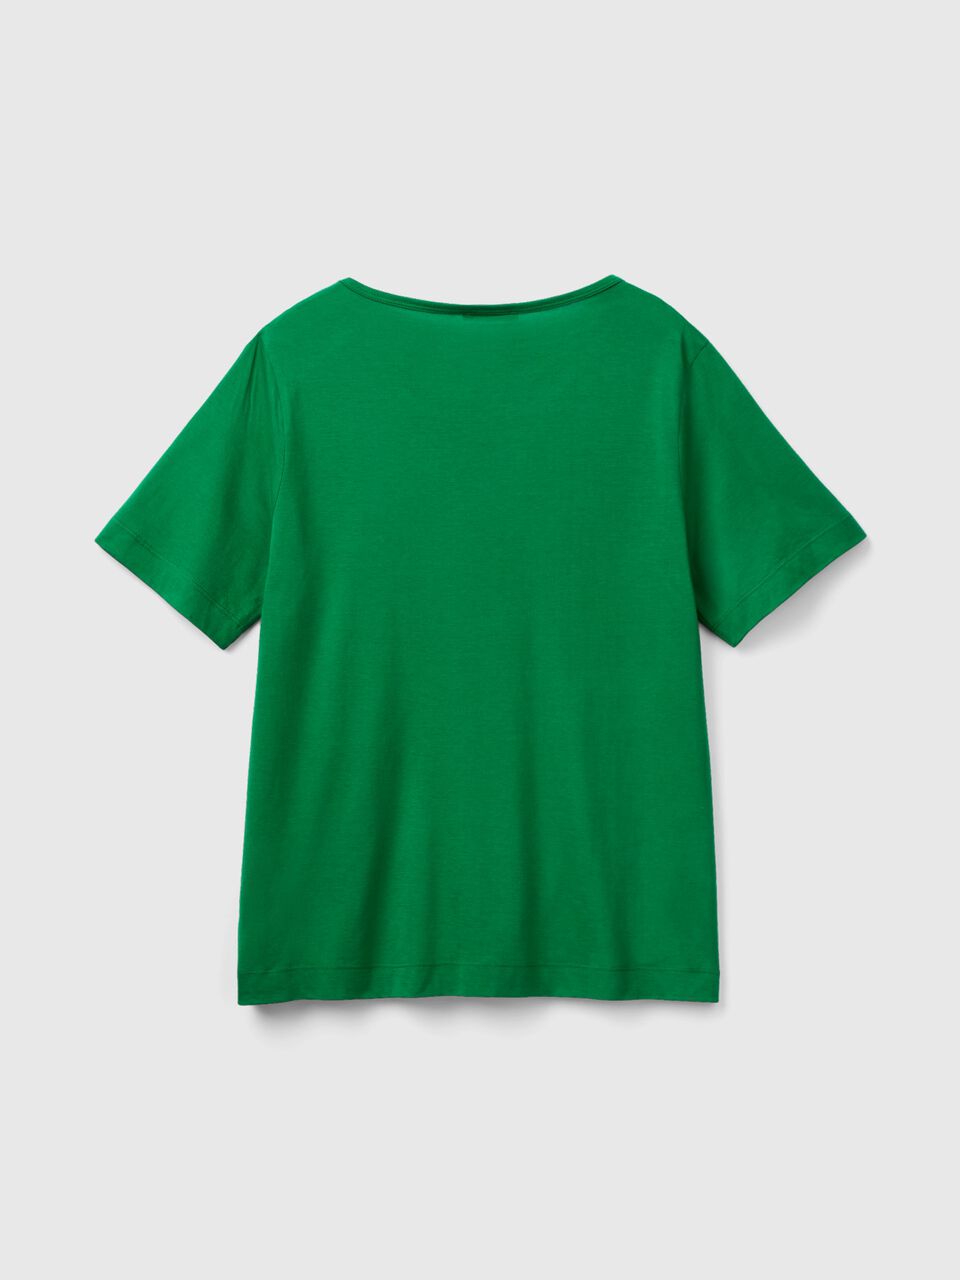 Camiseta manga corta verde bosque xl